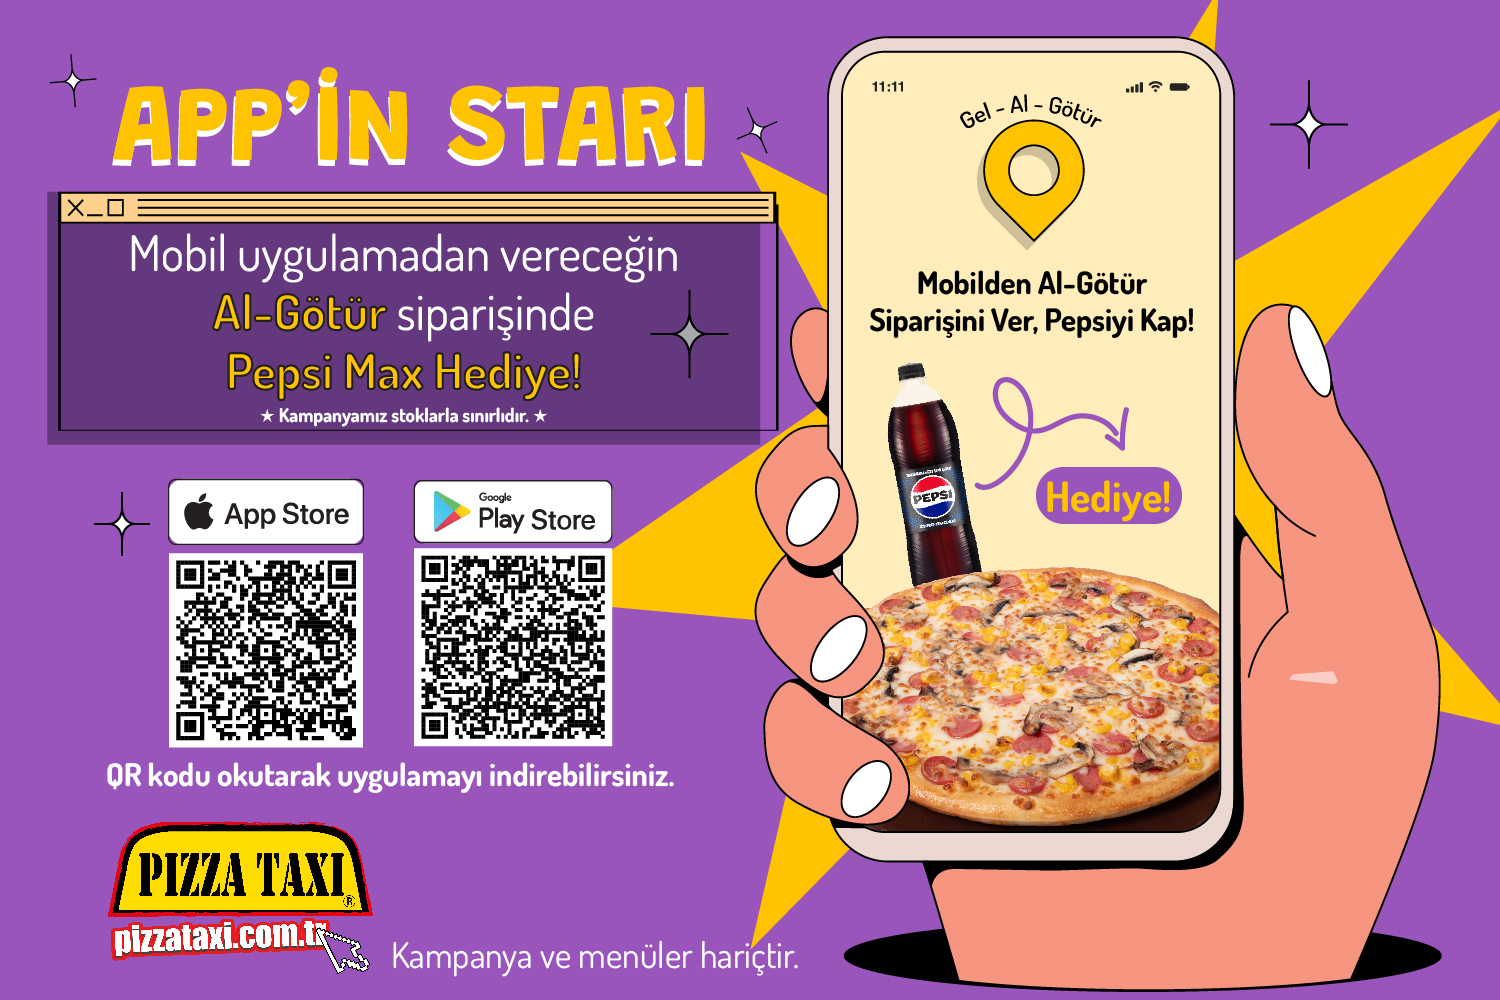 Pizza Taxi Yeni Uygulama Pepsi Hediyeli